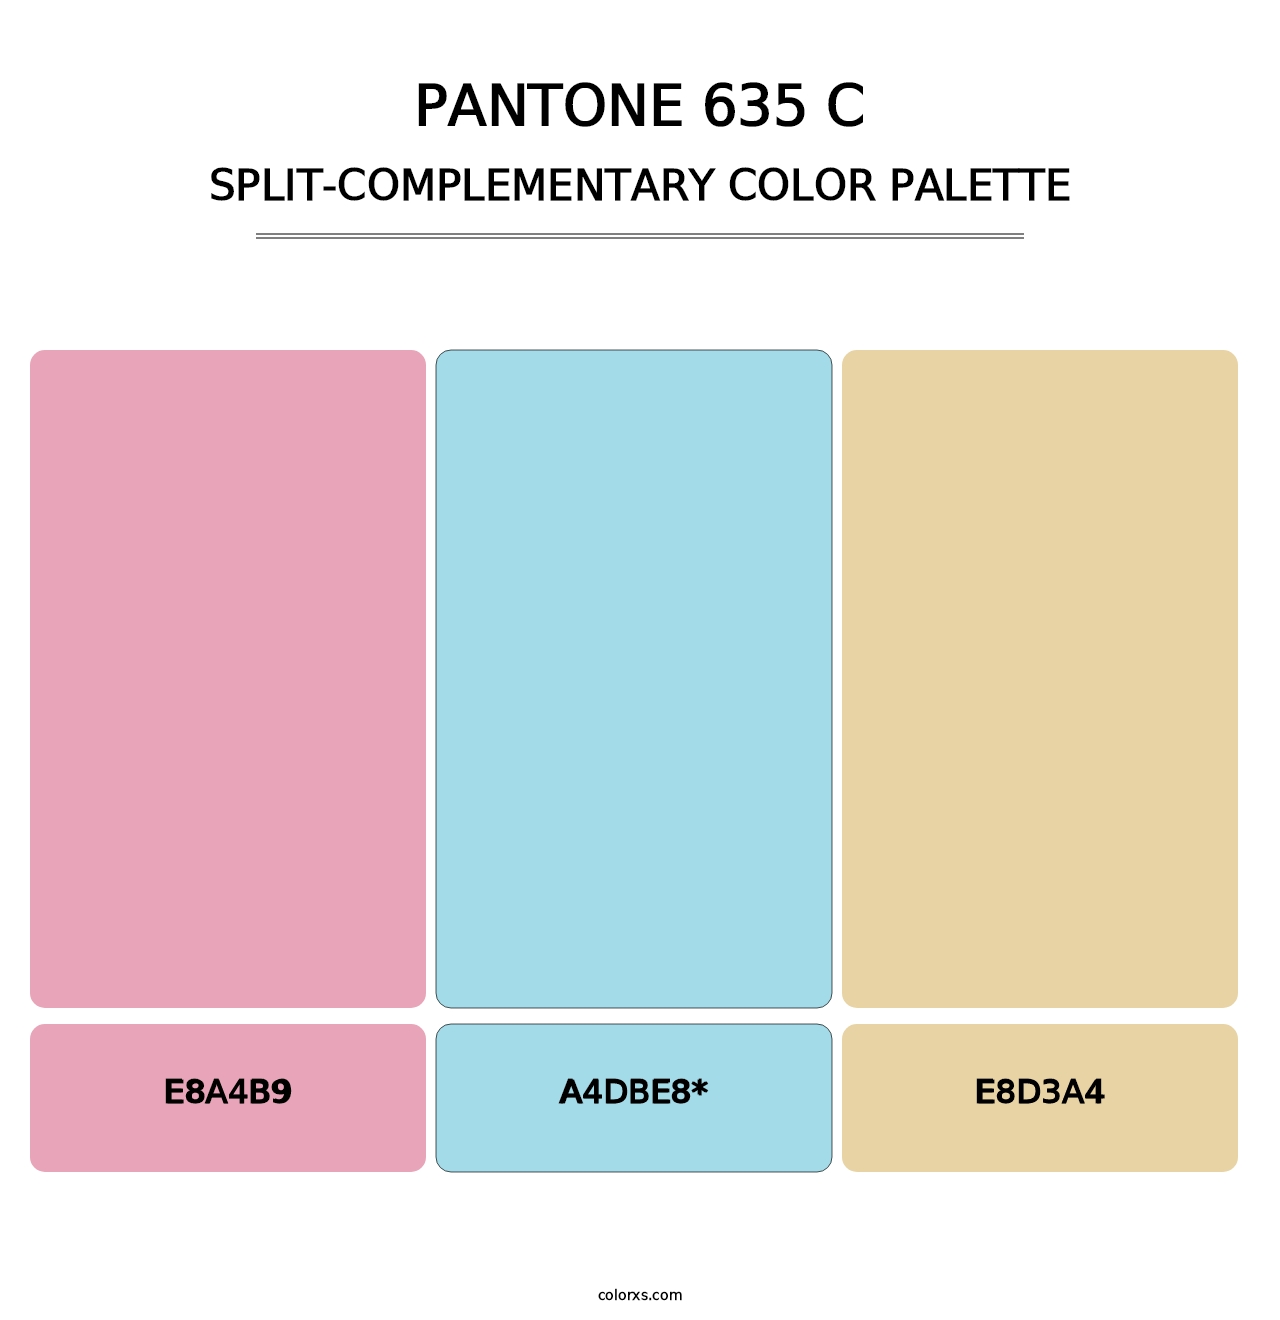 PANTONE 635 C - Split-Complementary Color Palette